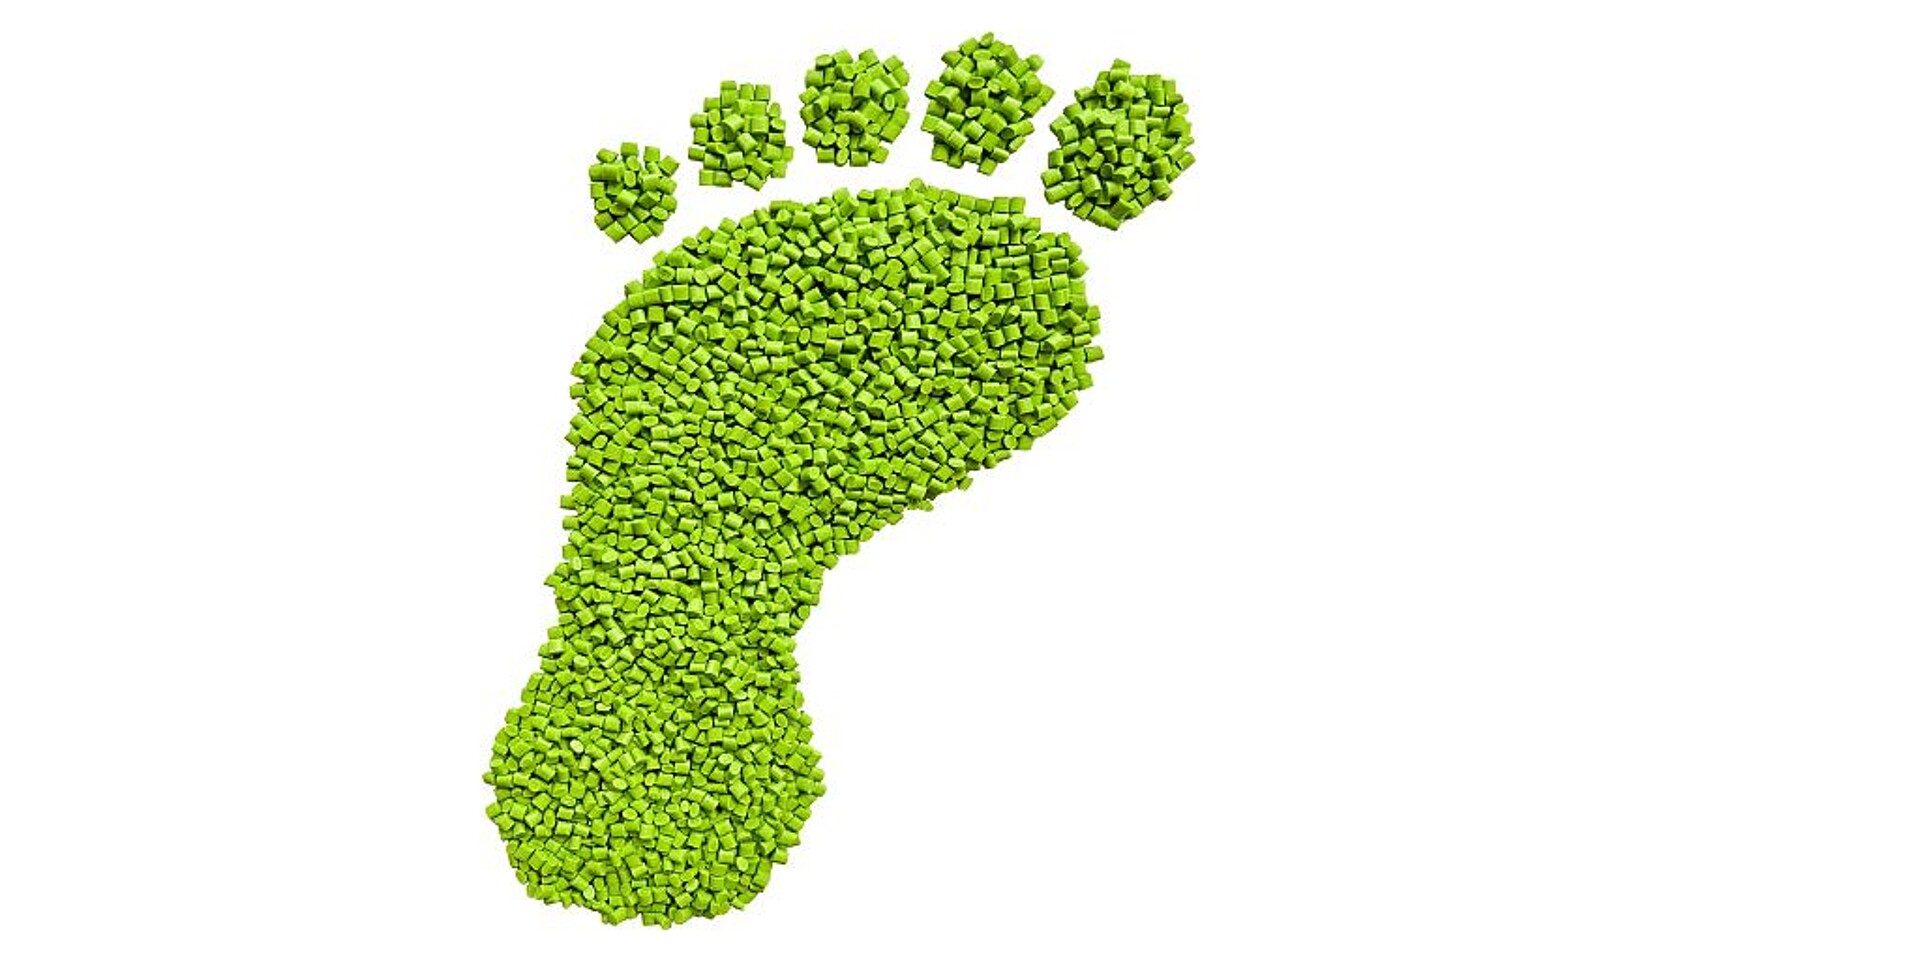 Für die CO2-Fußabdruckberechnung wurden die Fertigungsprozesse im Sitraplas-Werk betrachtet. (Abb.: Sitraplas)